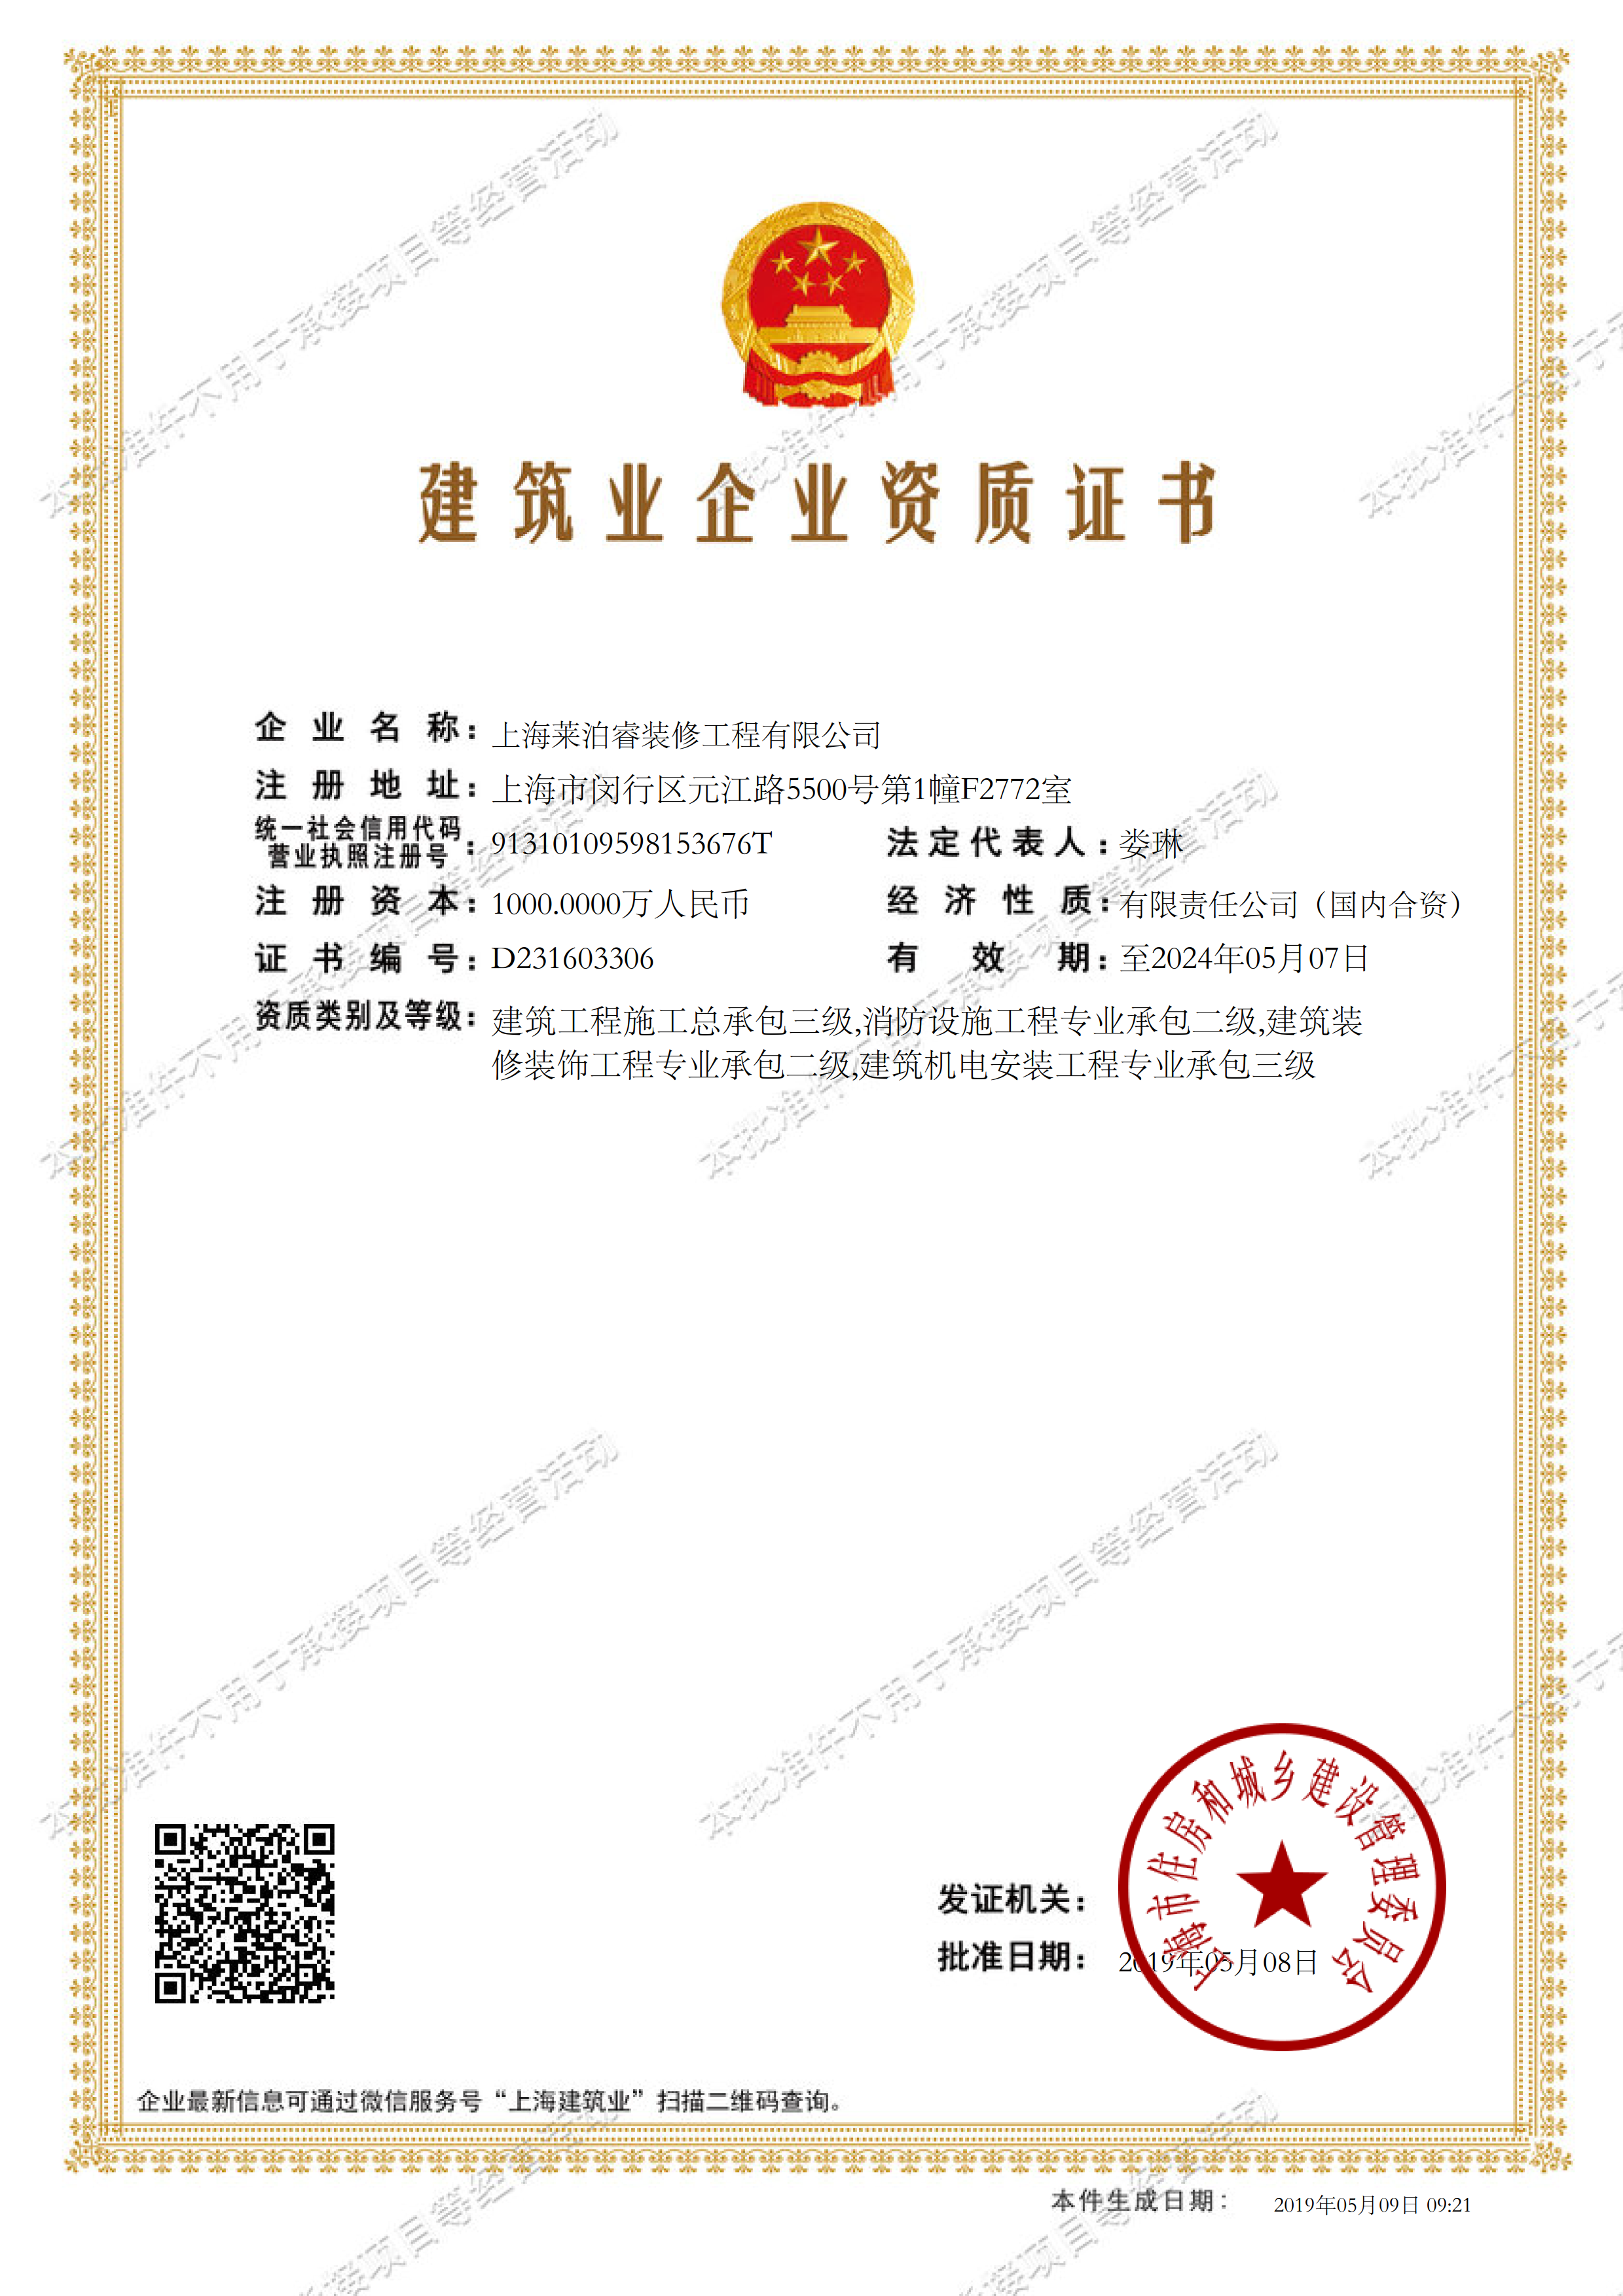 上海莱泊睿装修工程有限公司建筑业企业资质证书-20190509092114473_1